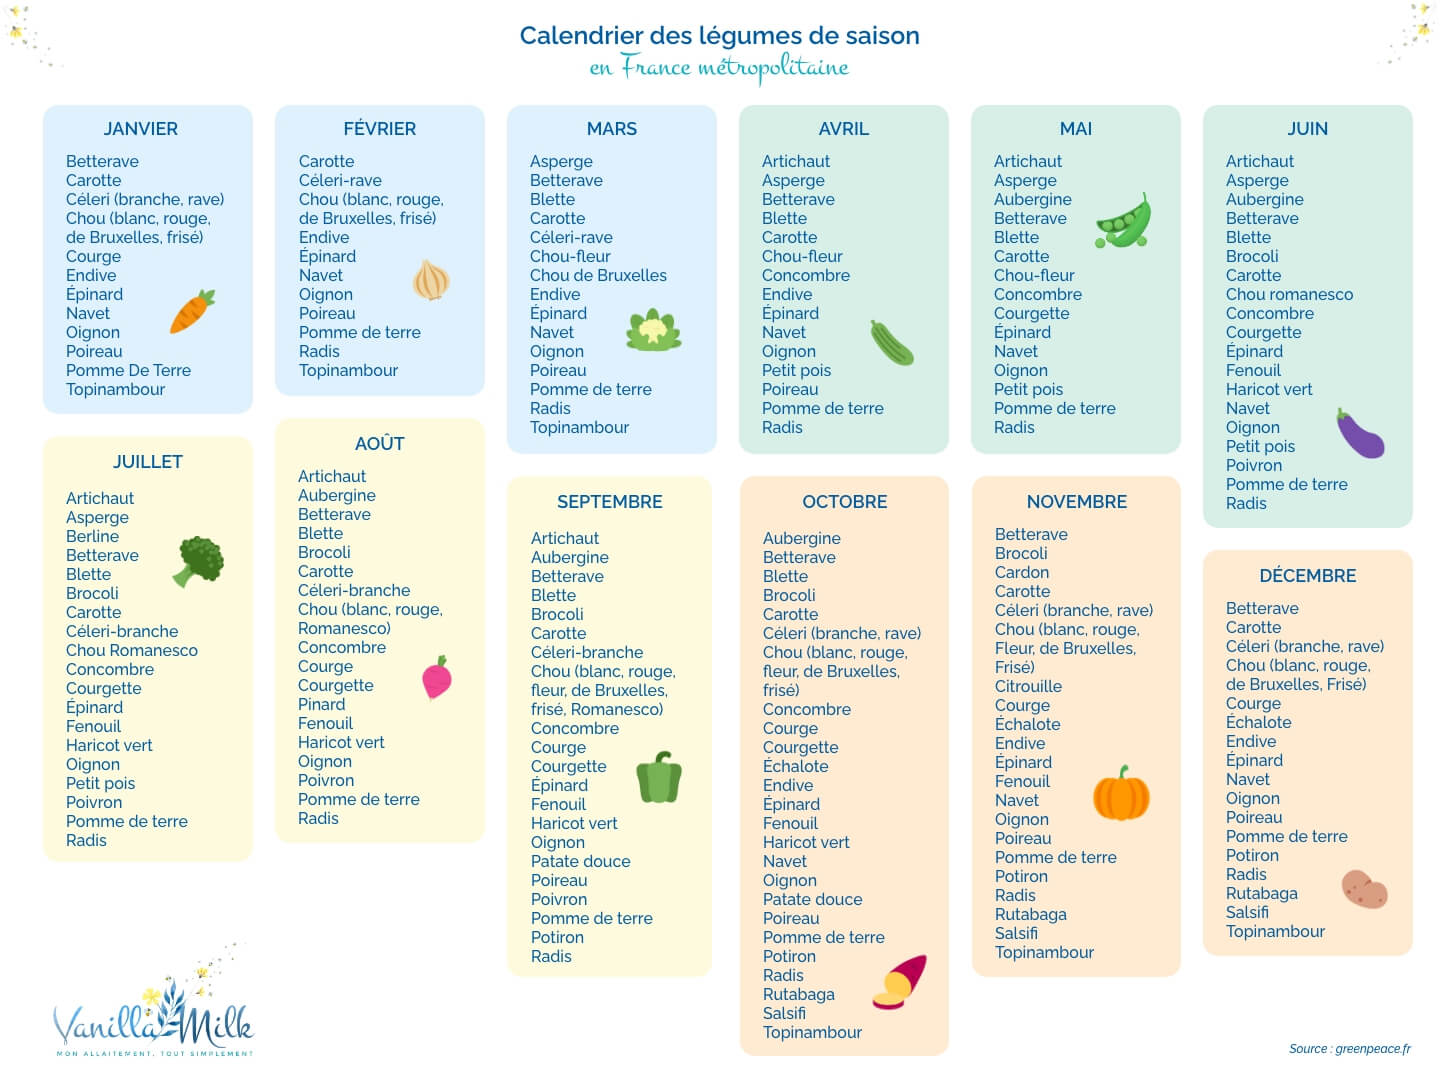 calendrier-legumes-de-saison